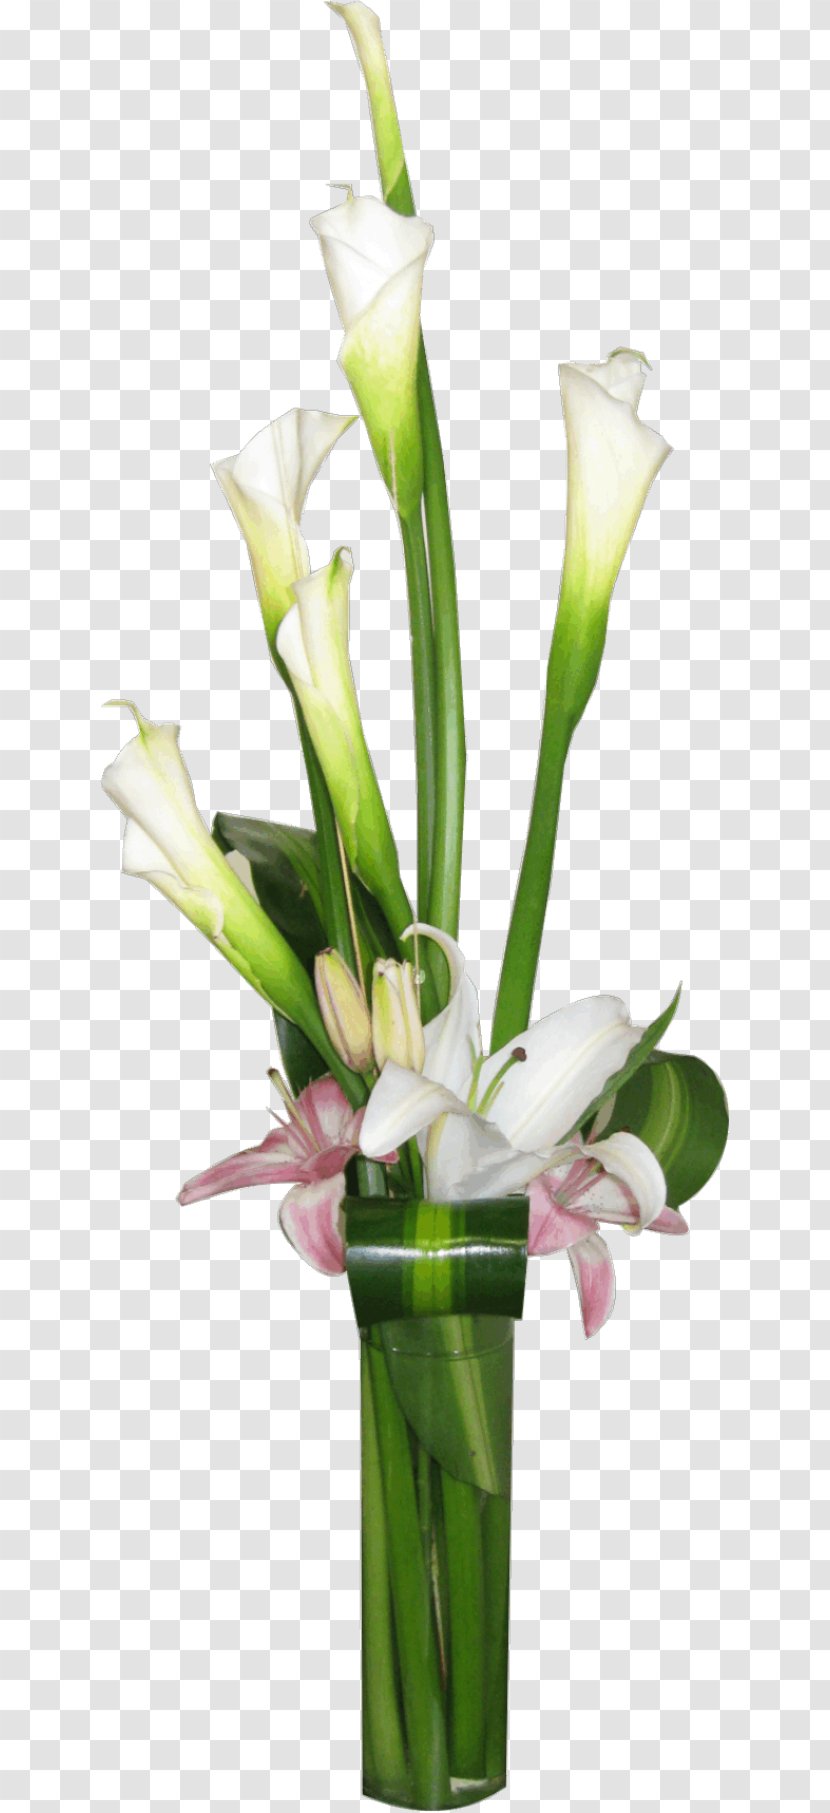 Floral Design Cut Flowers Vase Flower Bouquet - Cylinder Centerpieces Transparent PNG